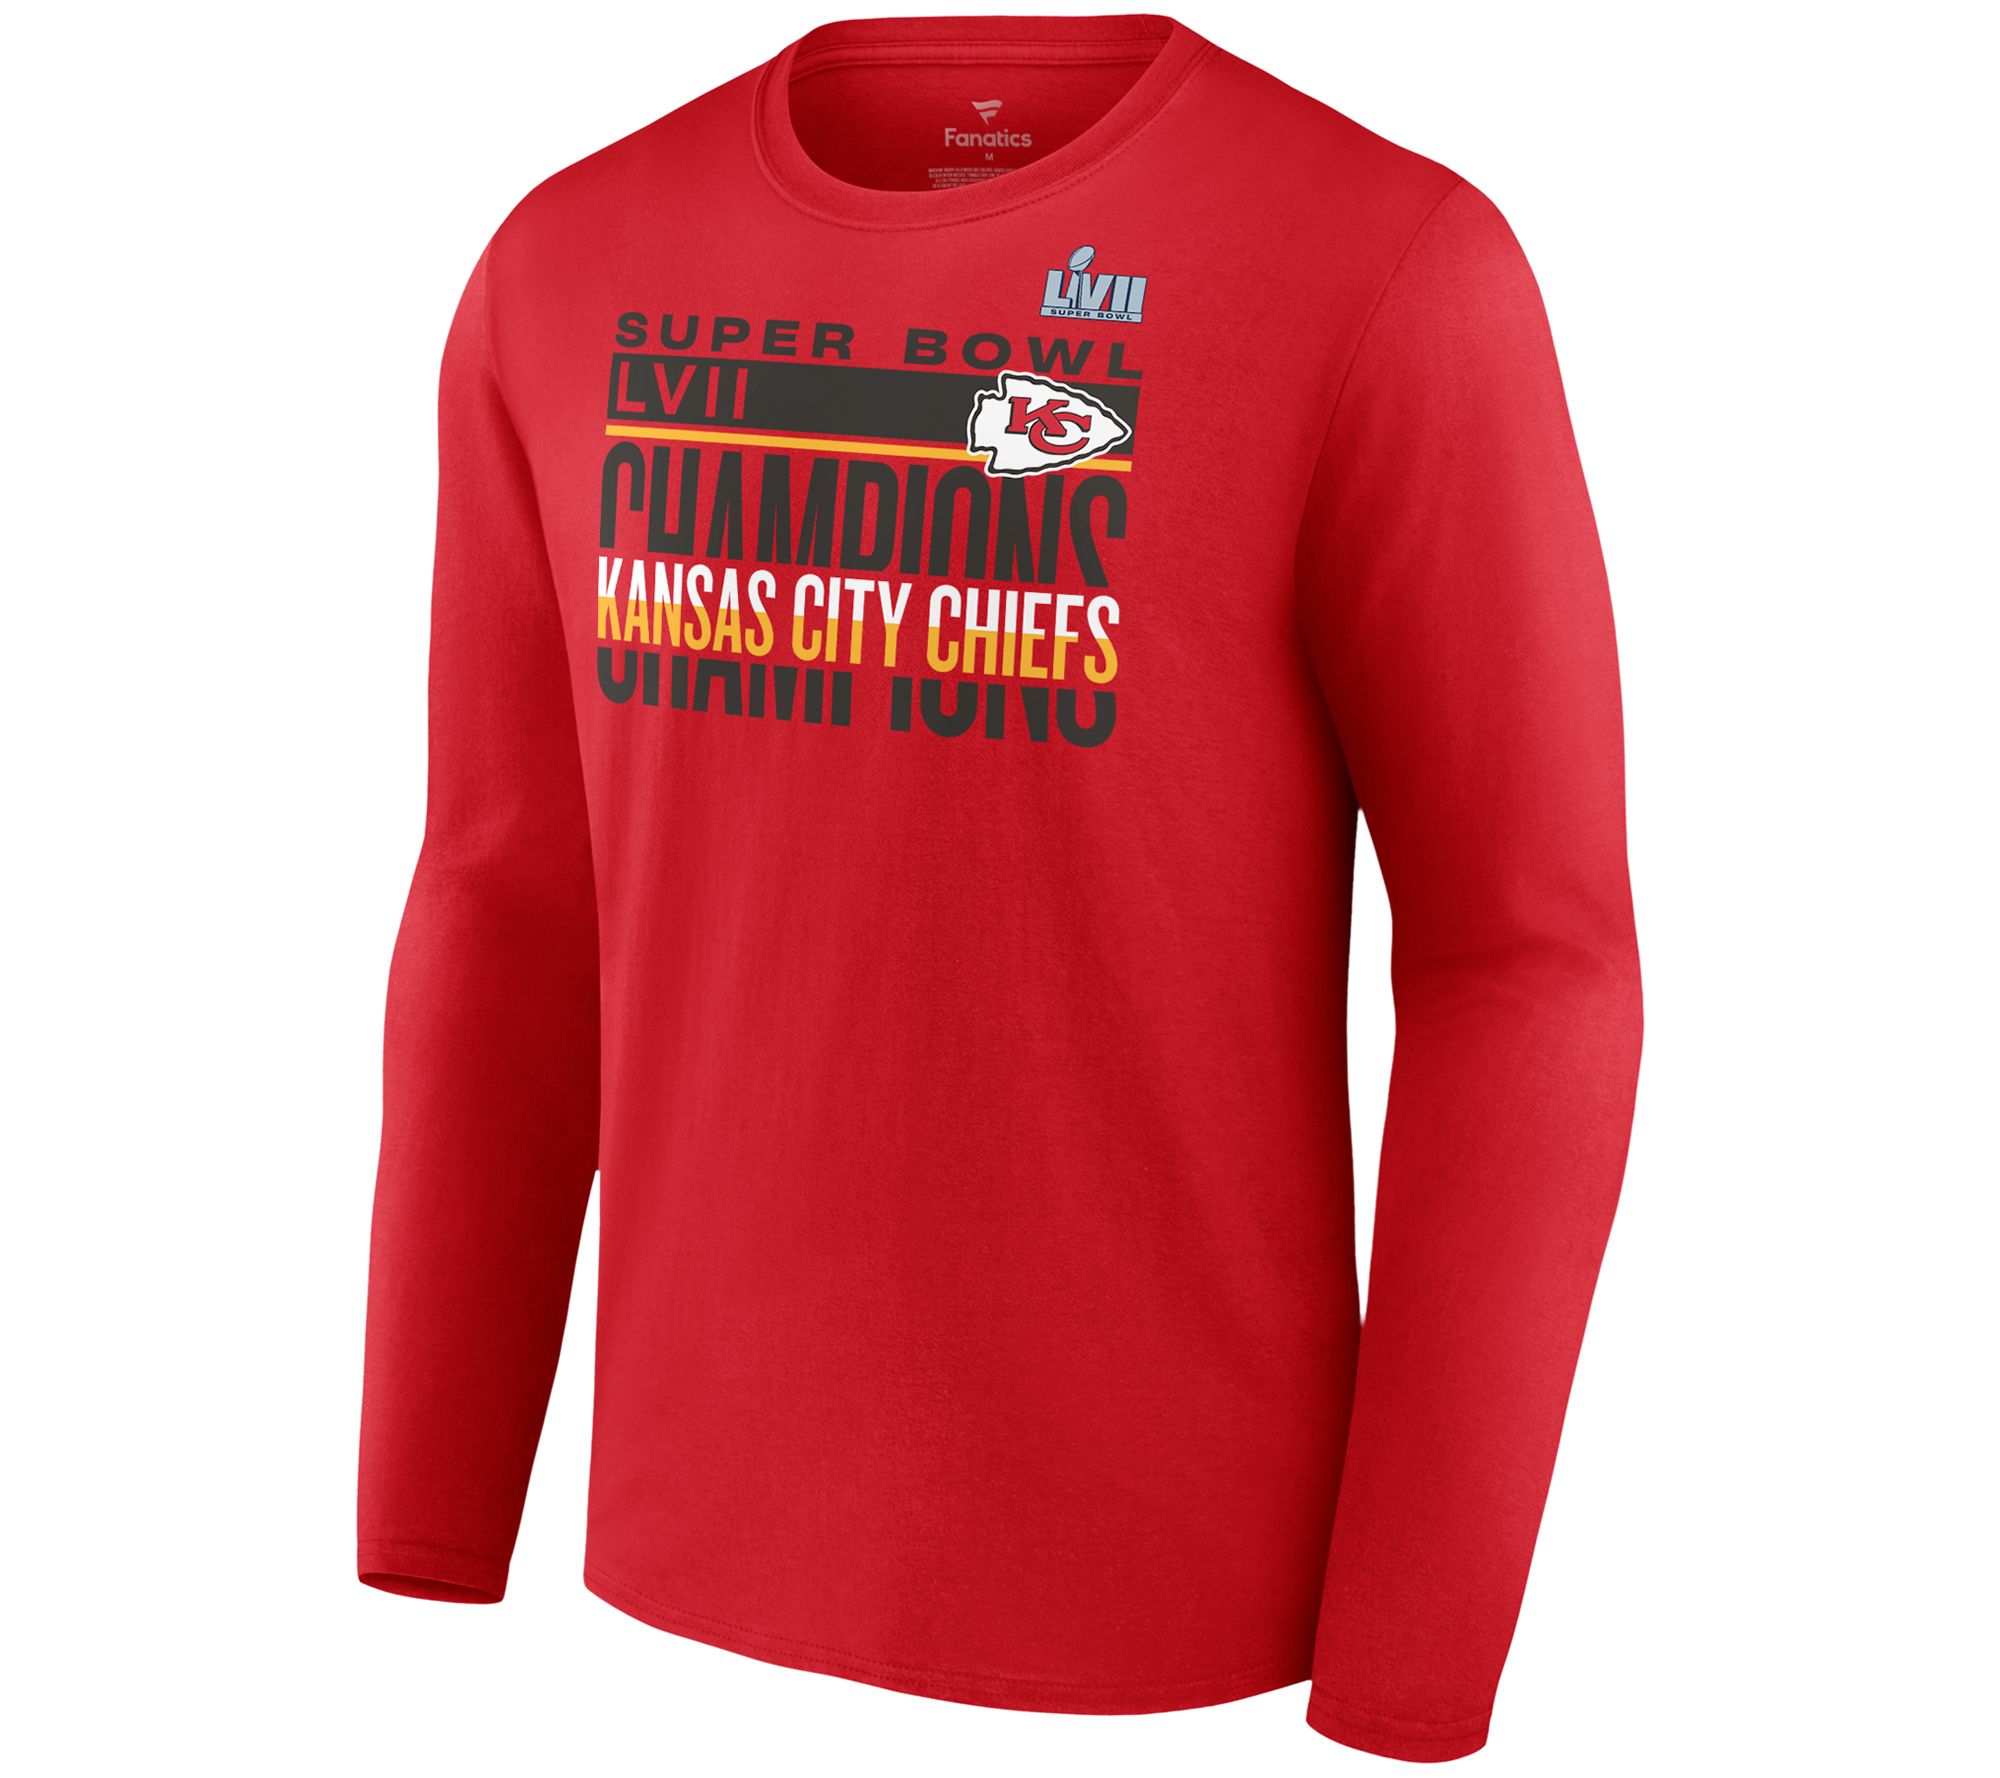 Super Bowl Lvii Kansas City Chiefs Big Red To Do List Shirt Hoodie